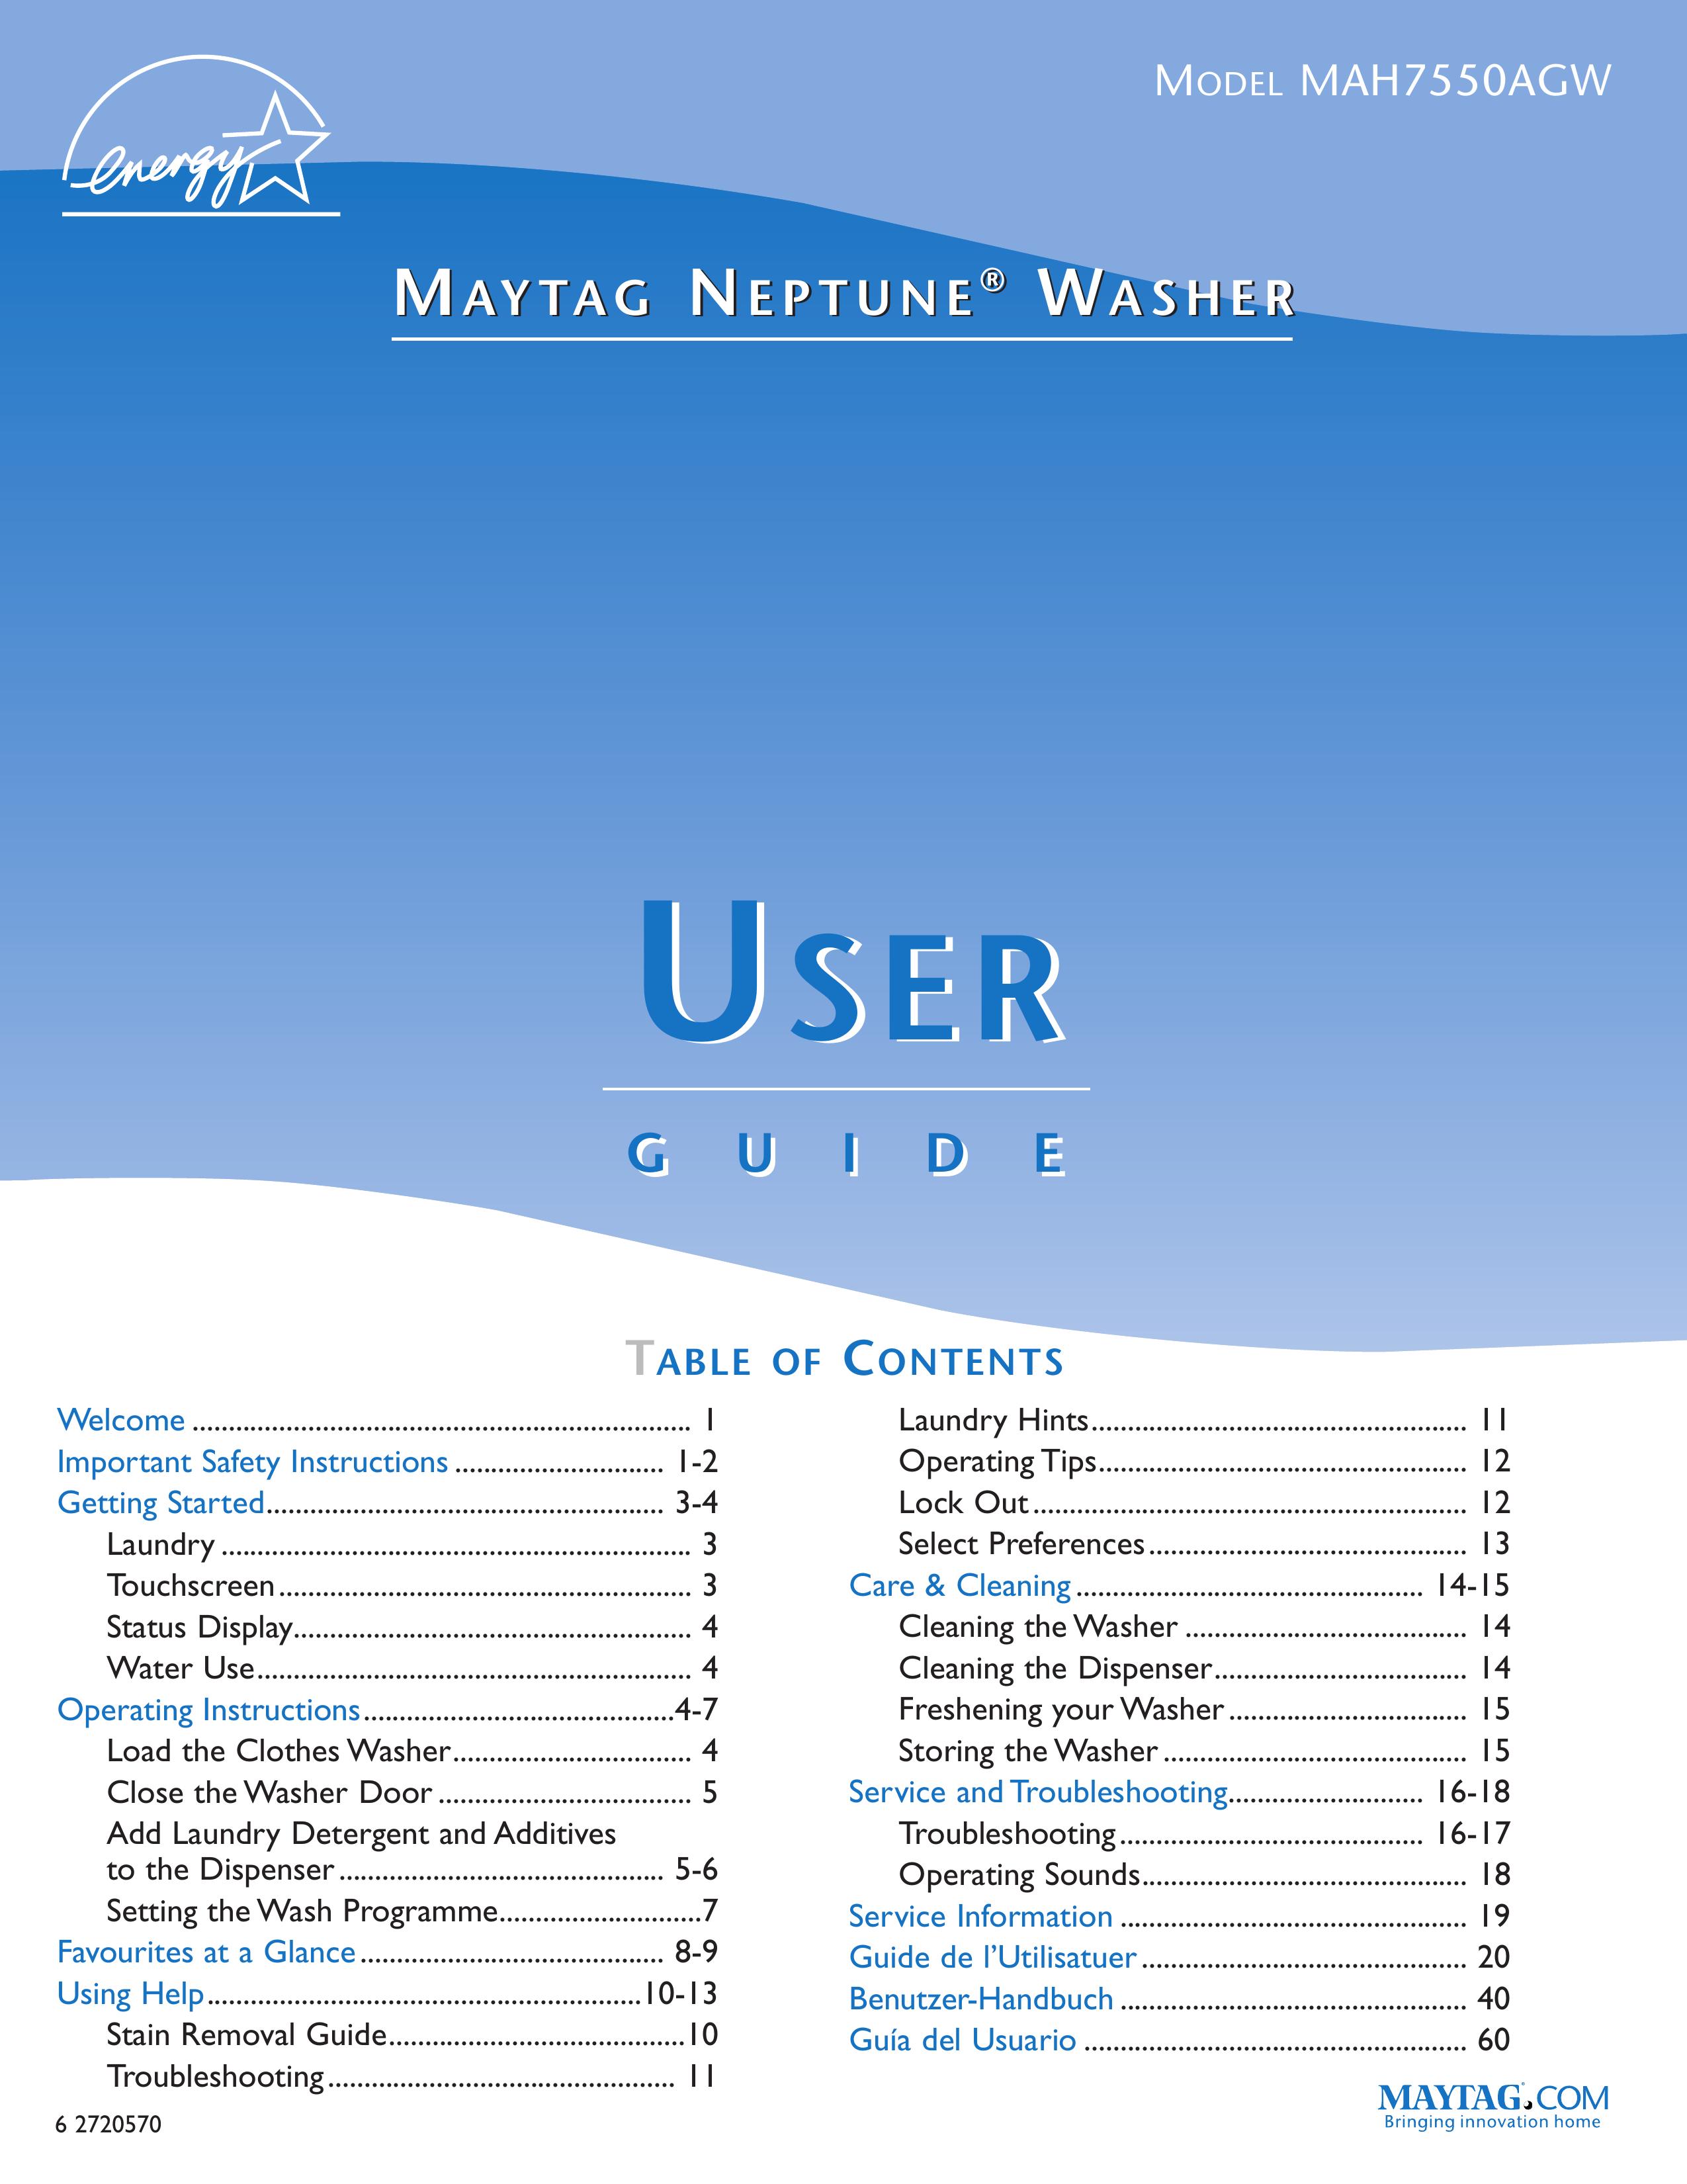 Maytag MAH7550AGW Washer/Dryer User Manual